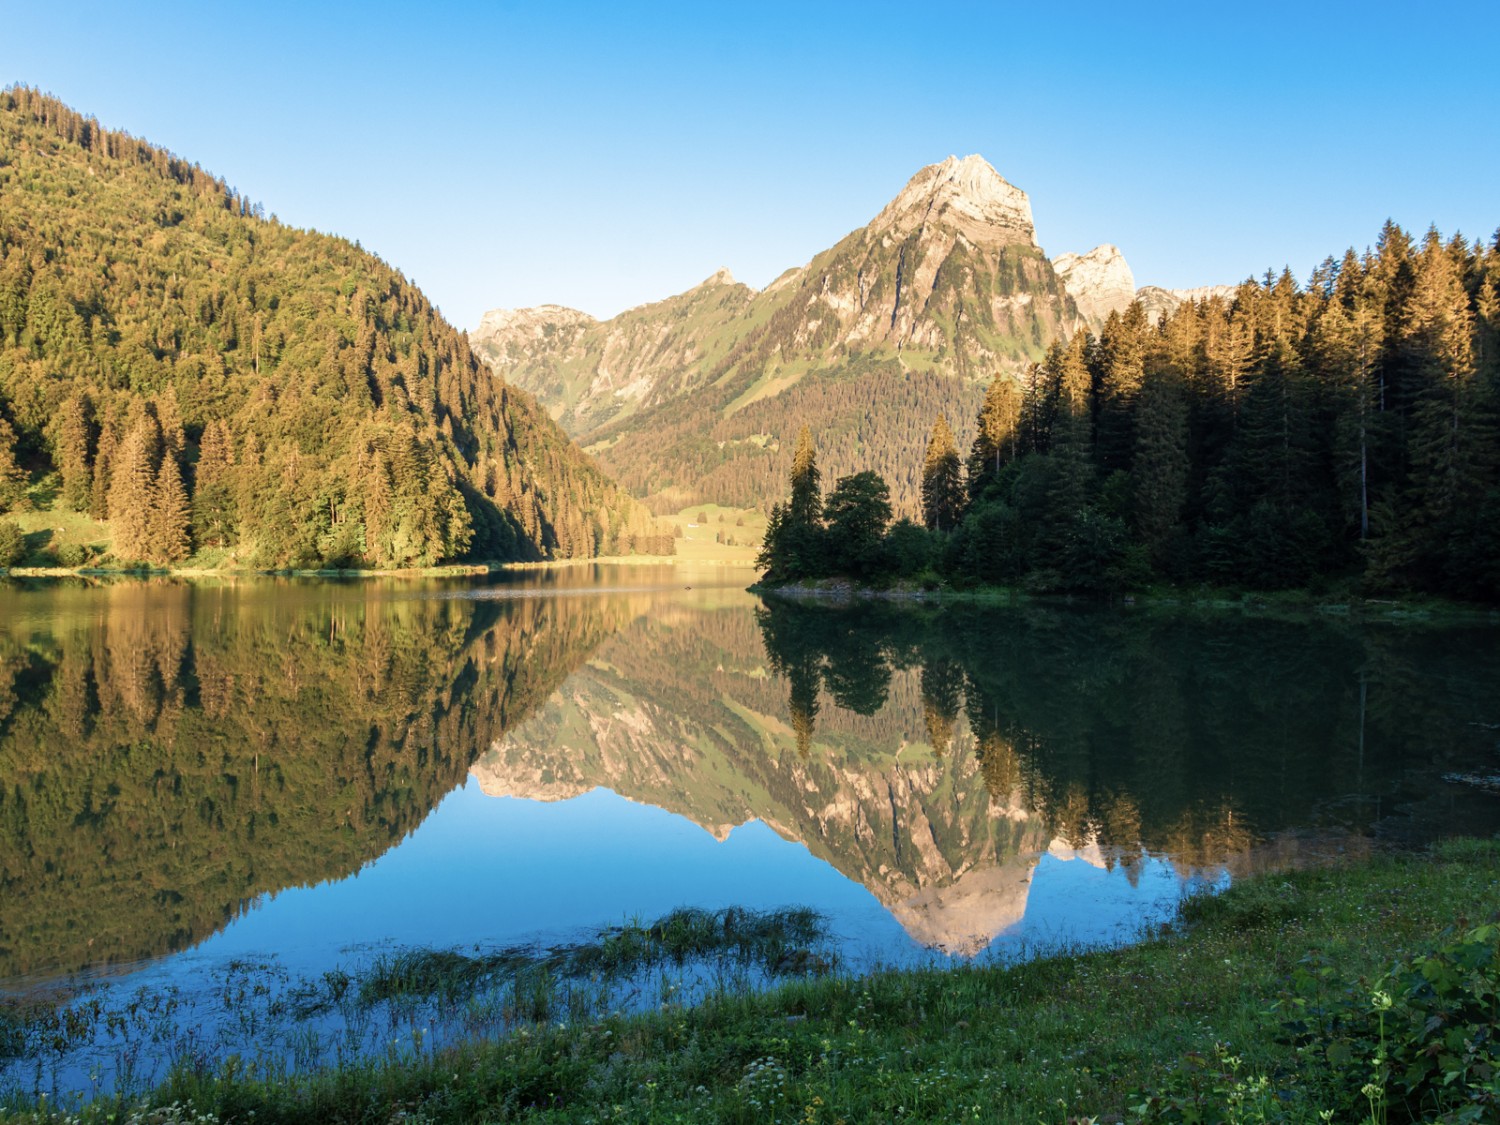 Reflet du Brünnelistock dans les eaux claires de l’Obersee. Photo: Franz Ulrich